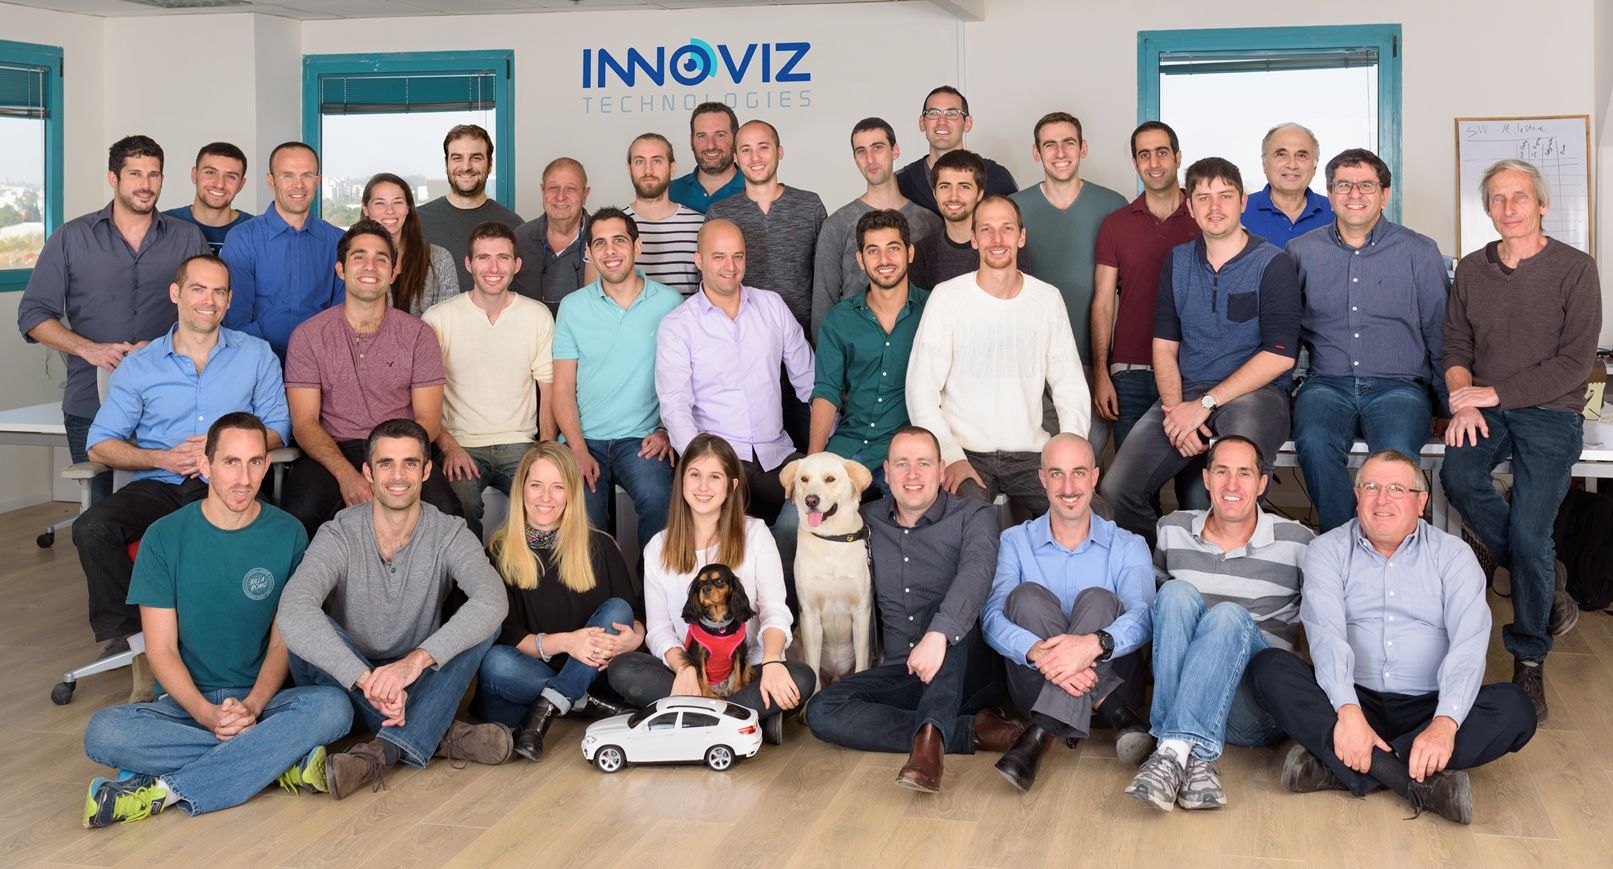 The Innoviz team (Courtesy of Innoviz)